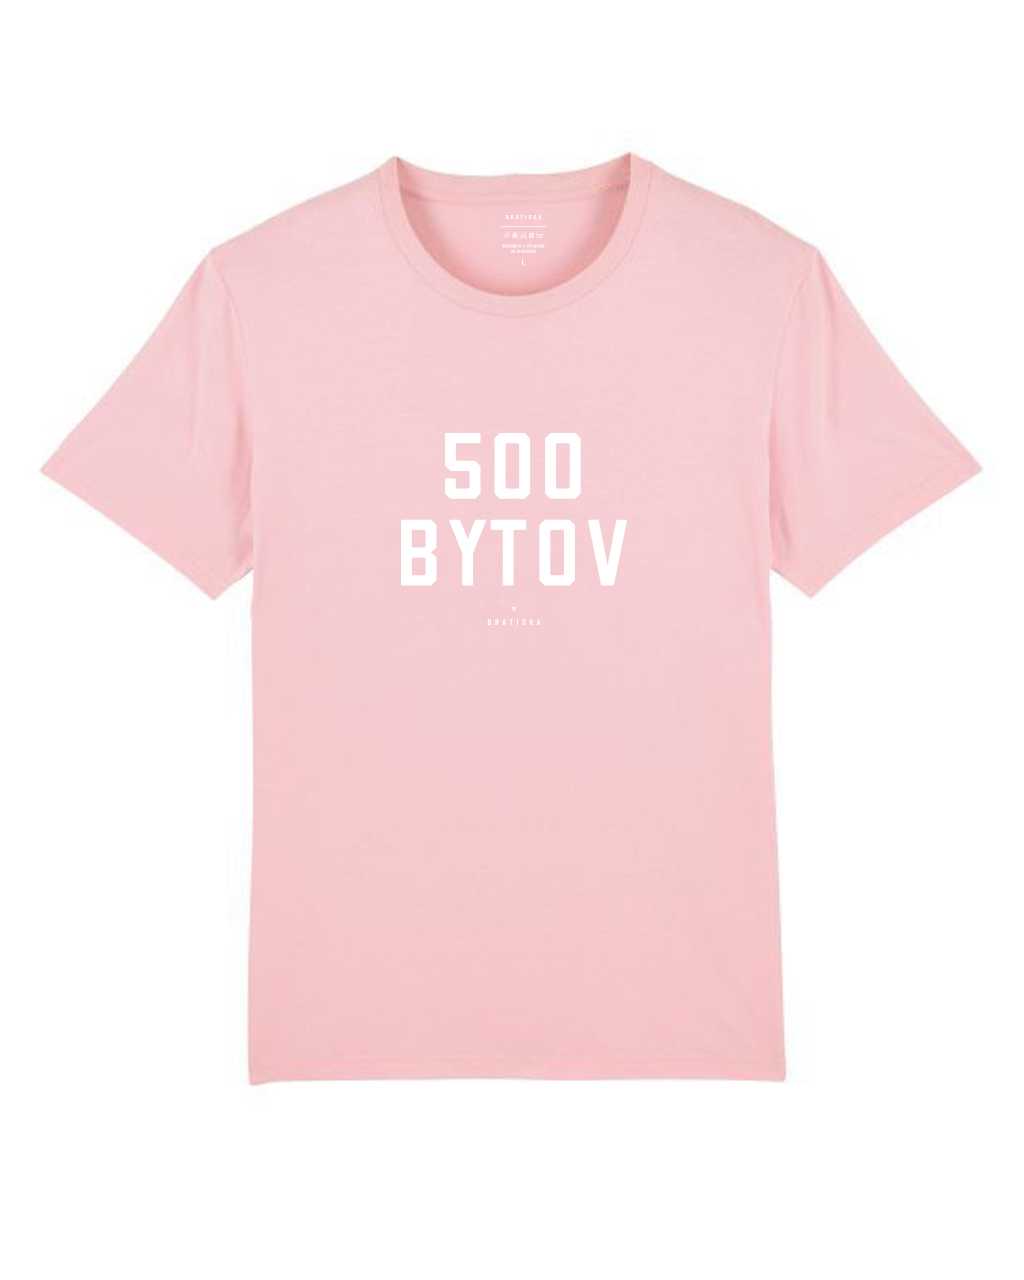 500 Bytov